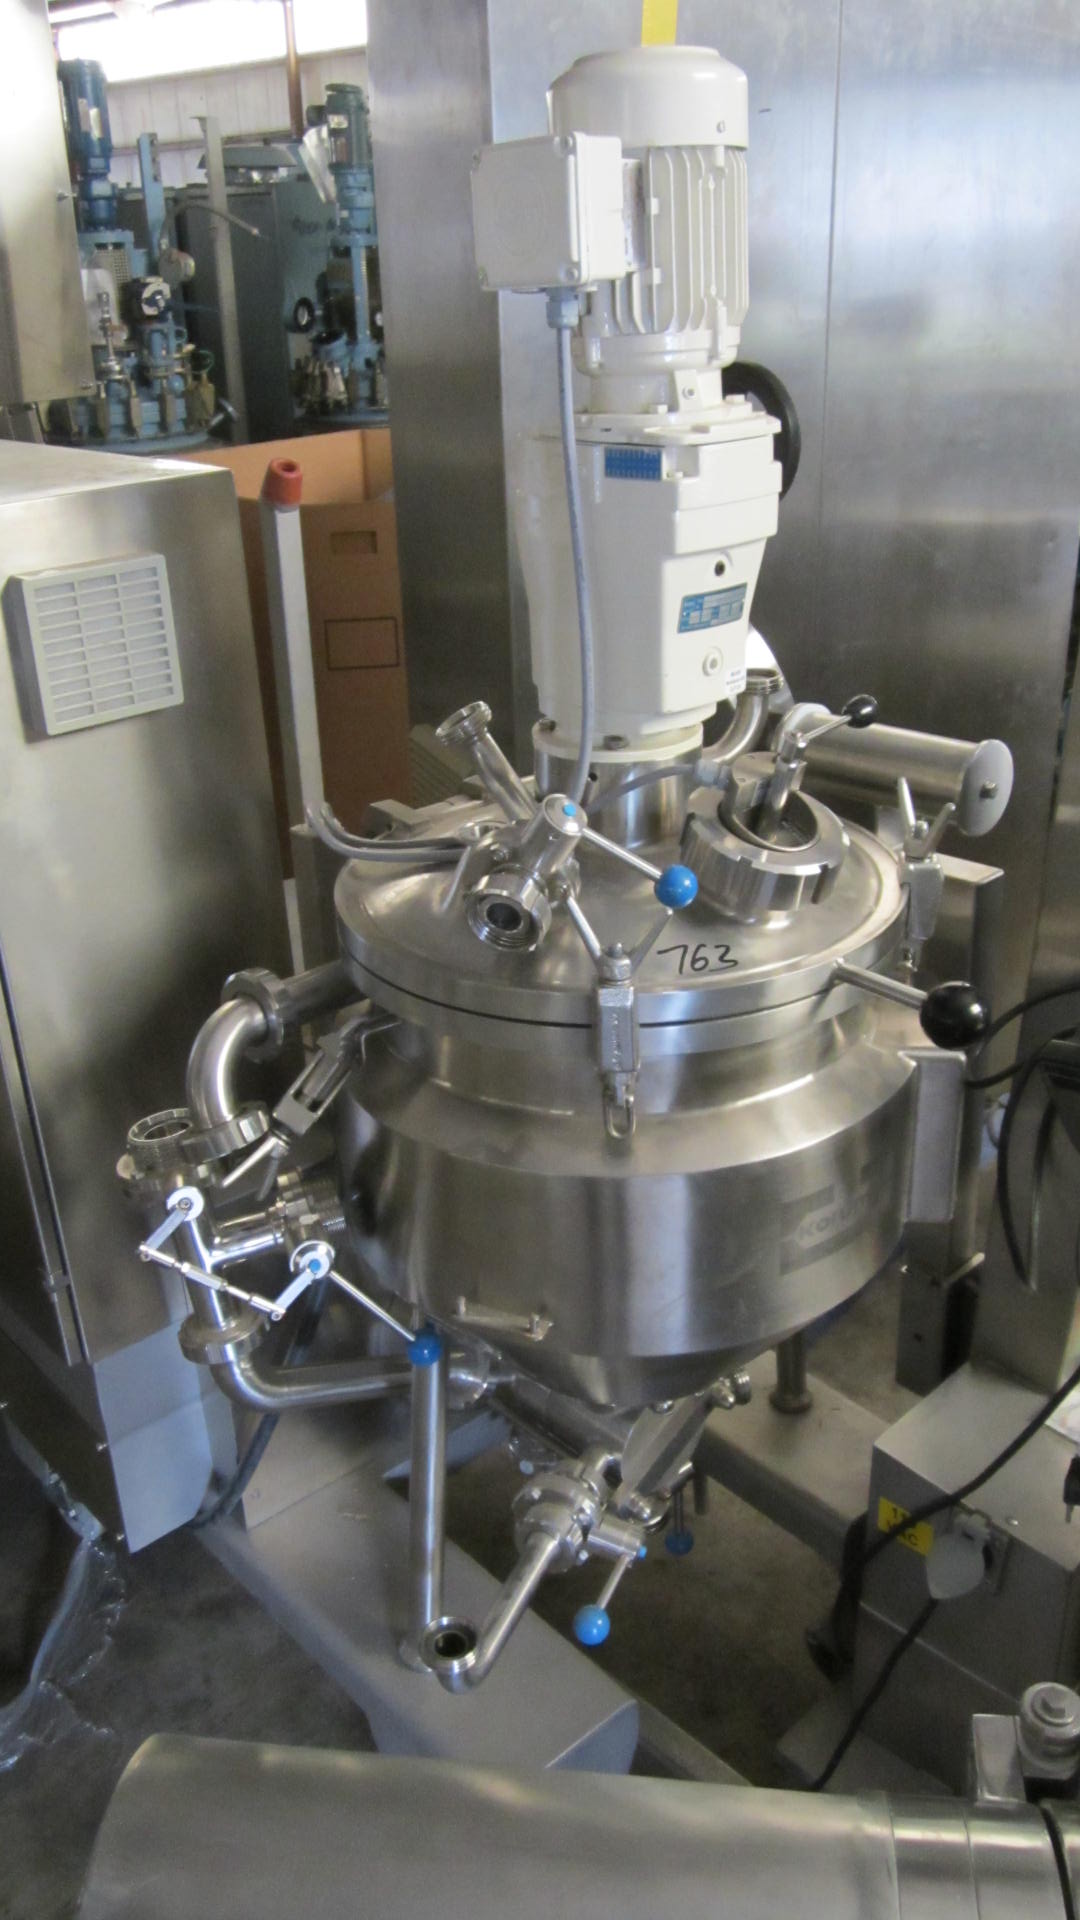 45 лтр Koruma Disho V100/45 нержавеющая установка для производства соусов, майонеза & кетчупа.